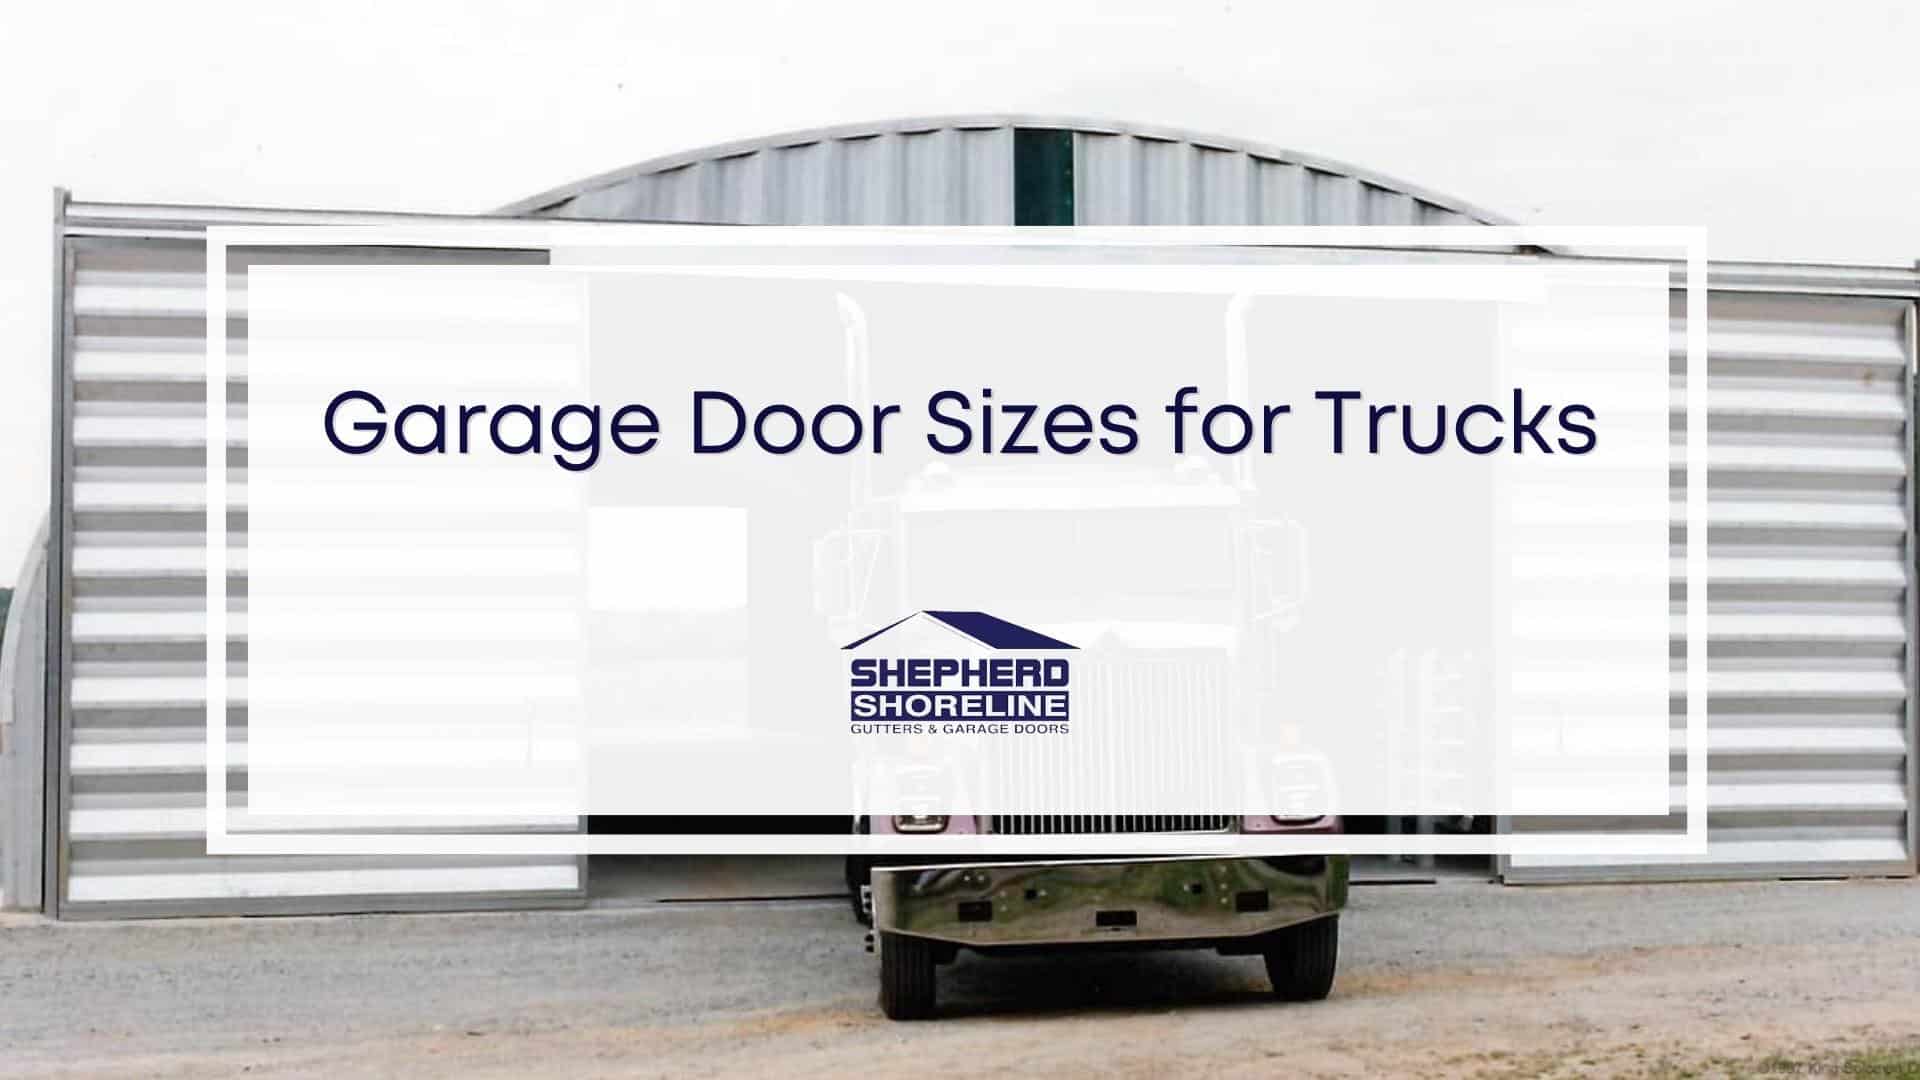 Featured image of garage door sizes for trucks